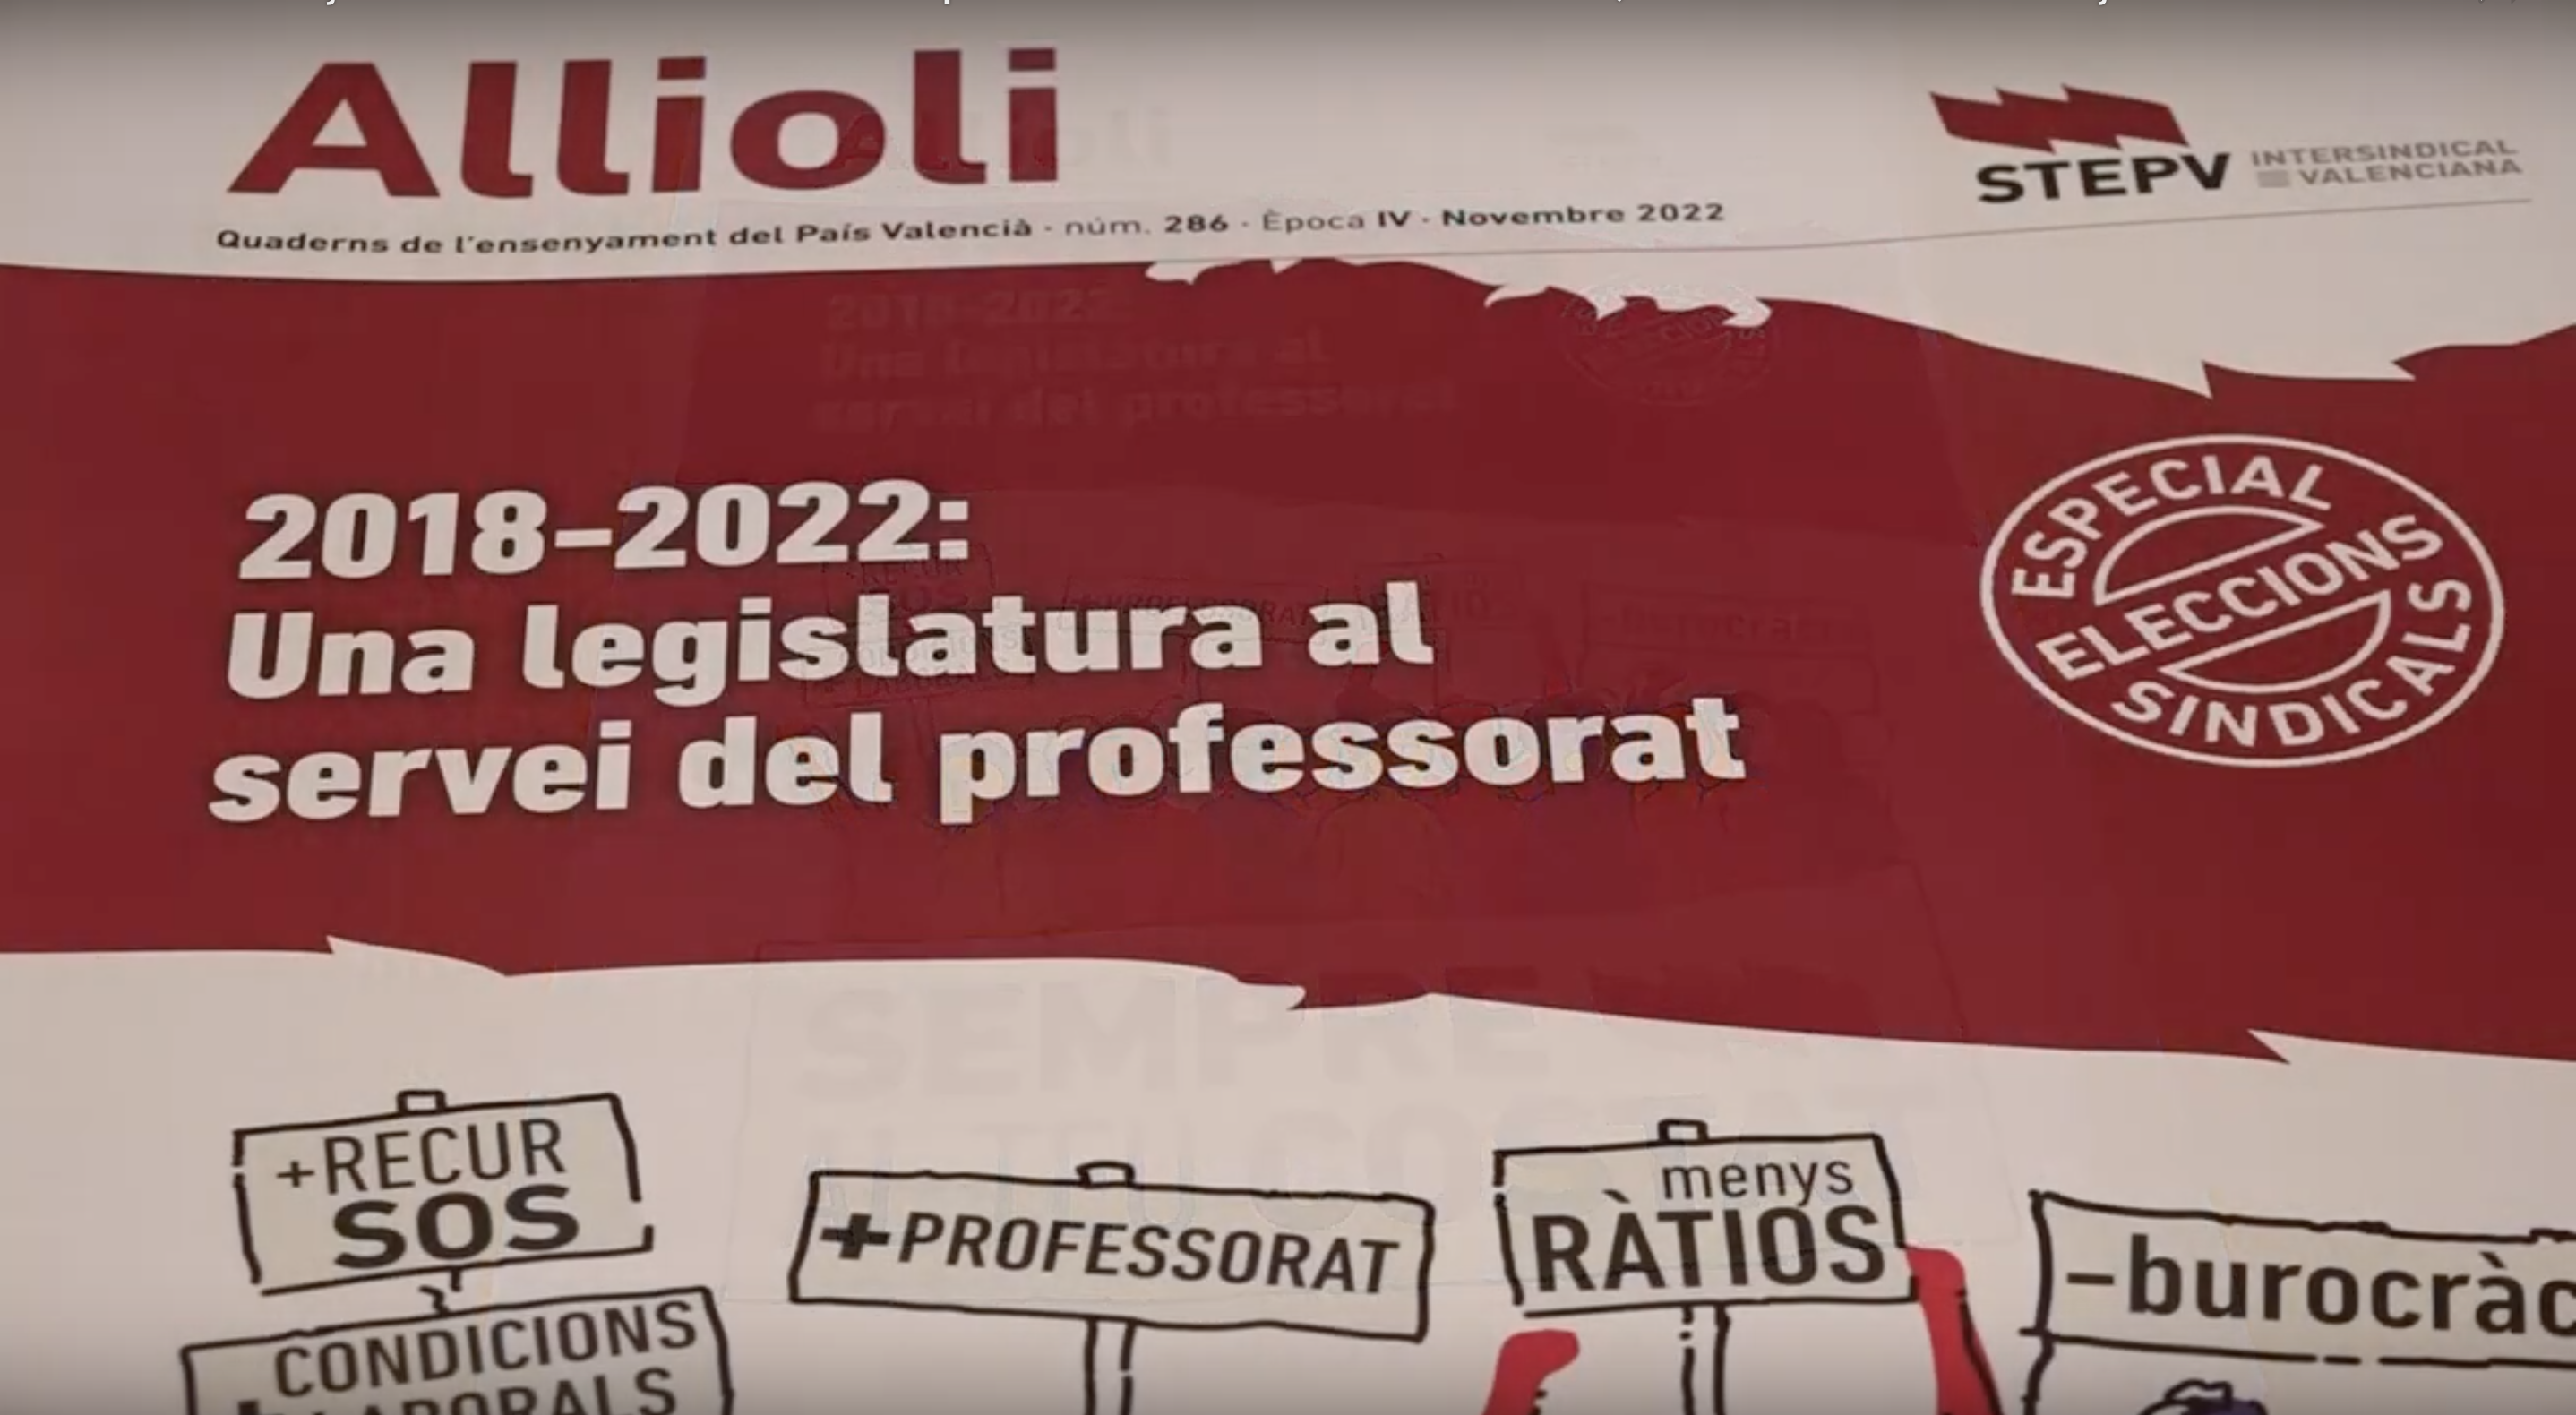 Allioli 286 - “2018-2022 Una legislatura al servei del professorat”